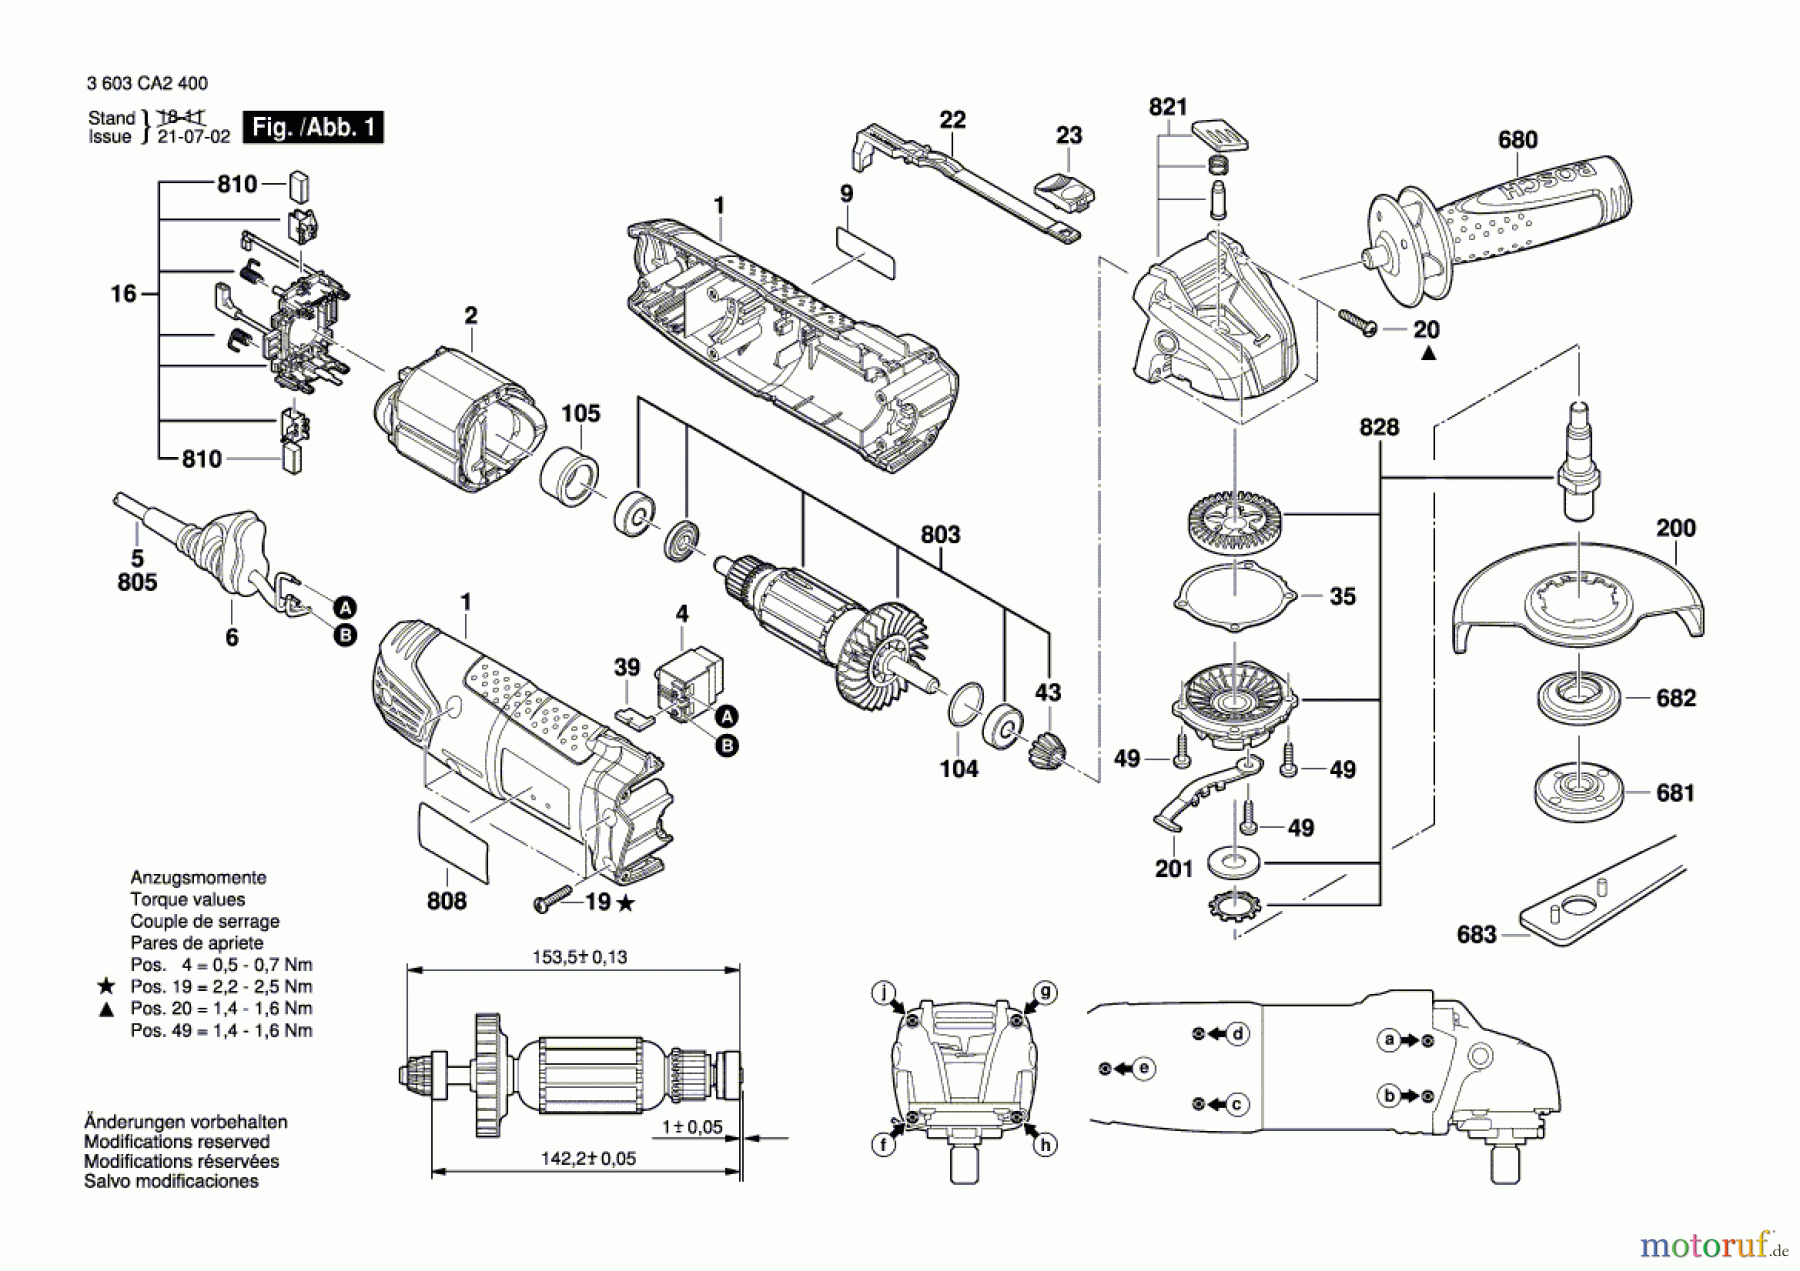  Bosch Werkzeug Winkelschleifer PWS 700-115 Seite 1